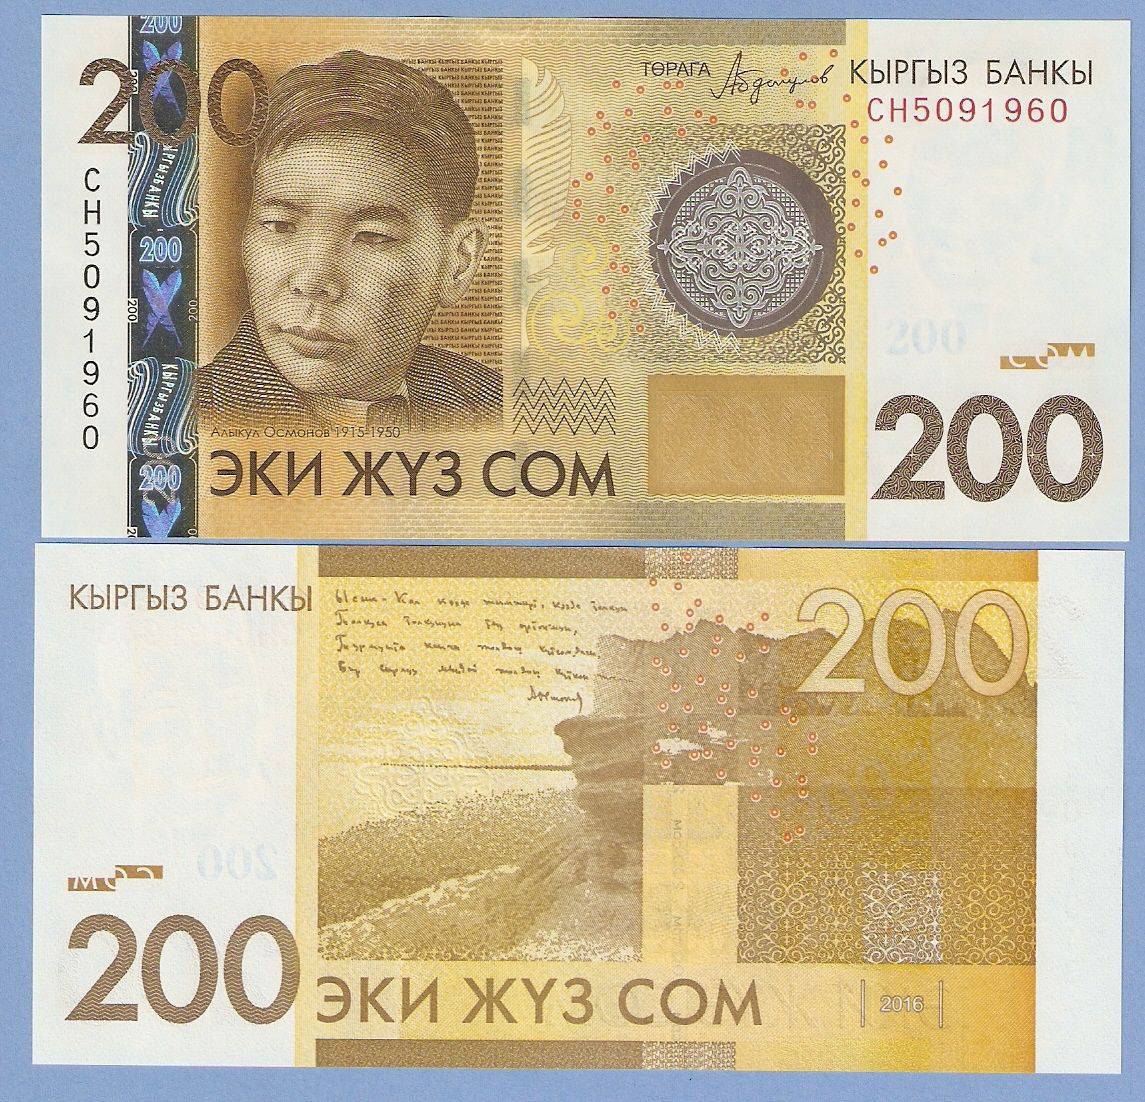 Киргизский сом к узбекскому суму. Эки жуз сом 200. 200 Сомов. Банкноты Киргизии. 200 Сом образец.